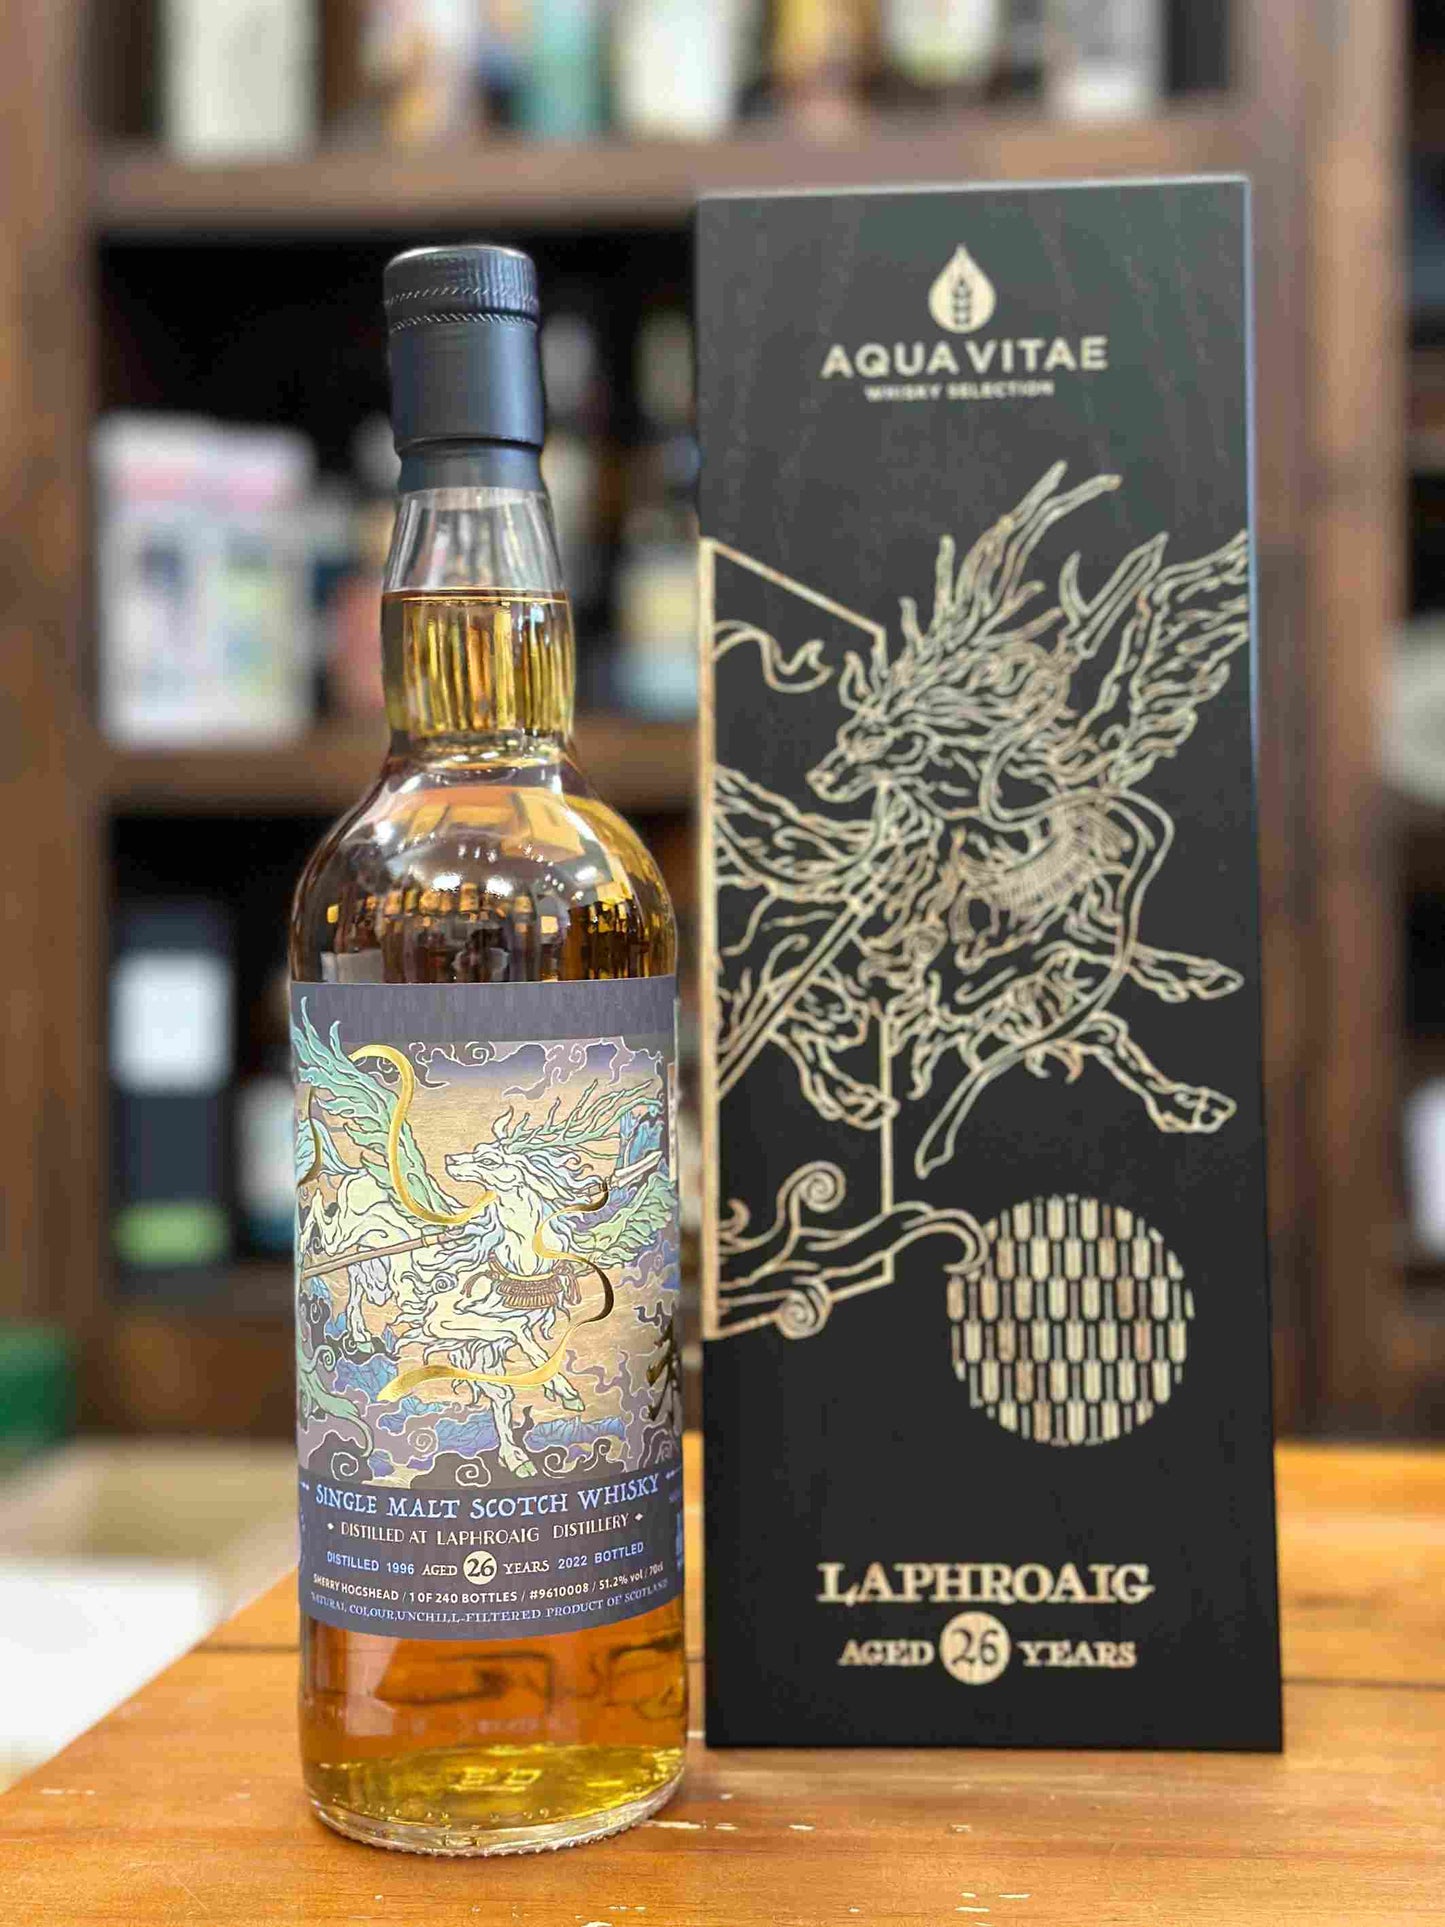 Whisky Laphroaig Aqua Vitae Shinanoya